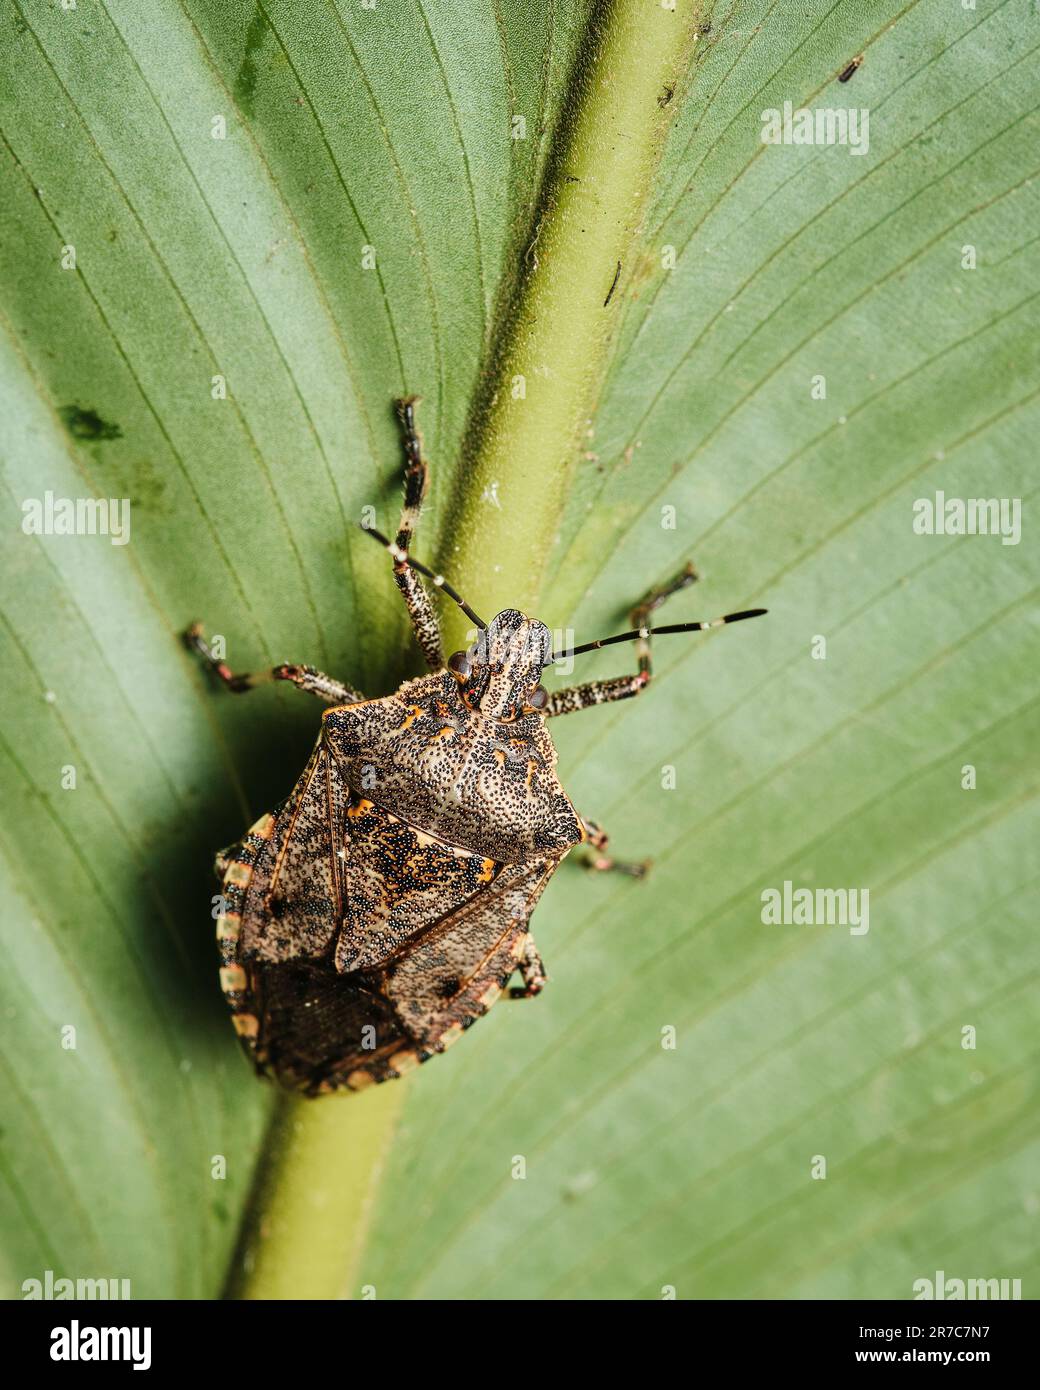 Un macrospo di un piccolo insetto seduto in cima ad una foglia verde vibrante, arroccato in cima ad un gambo di pianta sottile Foto Stock